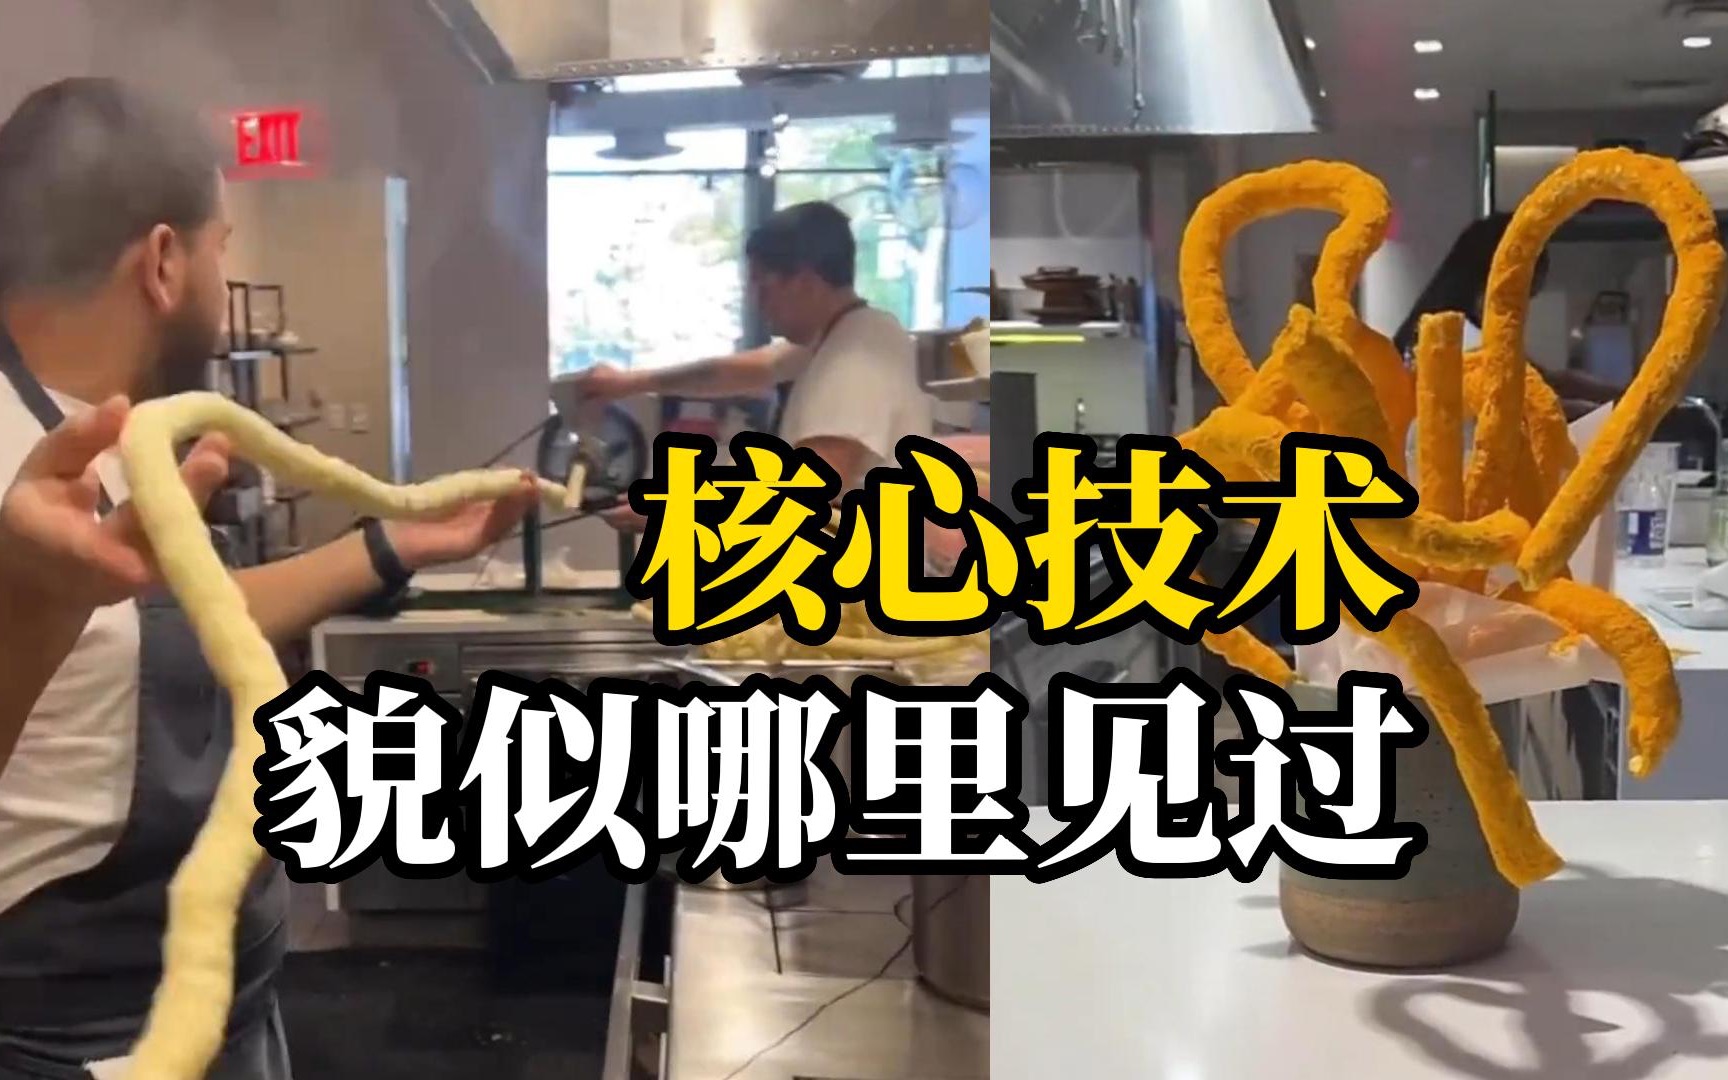 中国的拖拉机泡筒技术强势登陆，出品玉米棒风靡国外米其林餐厅